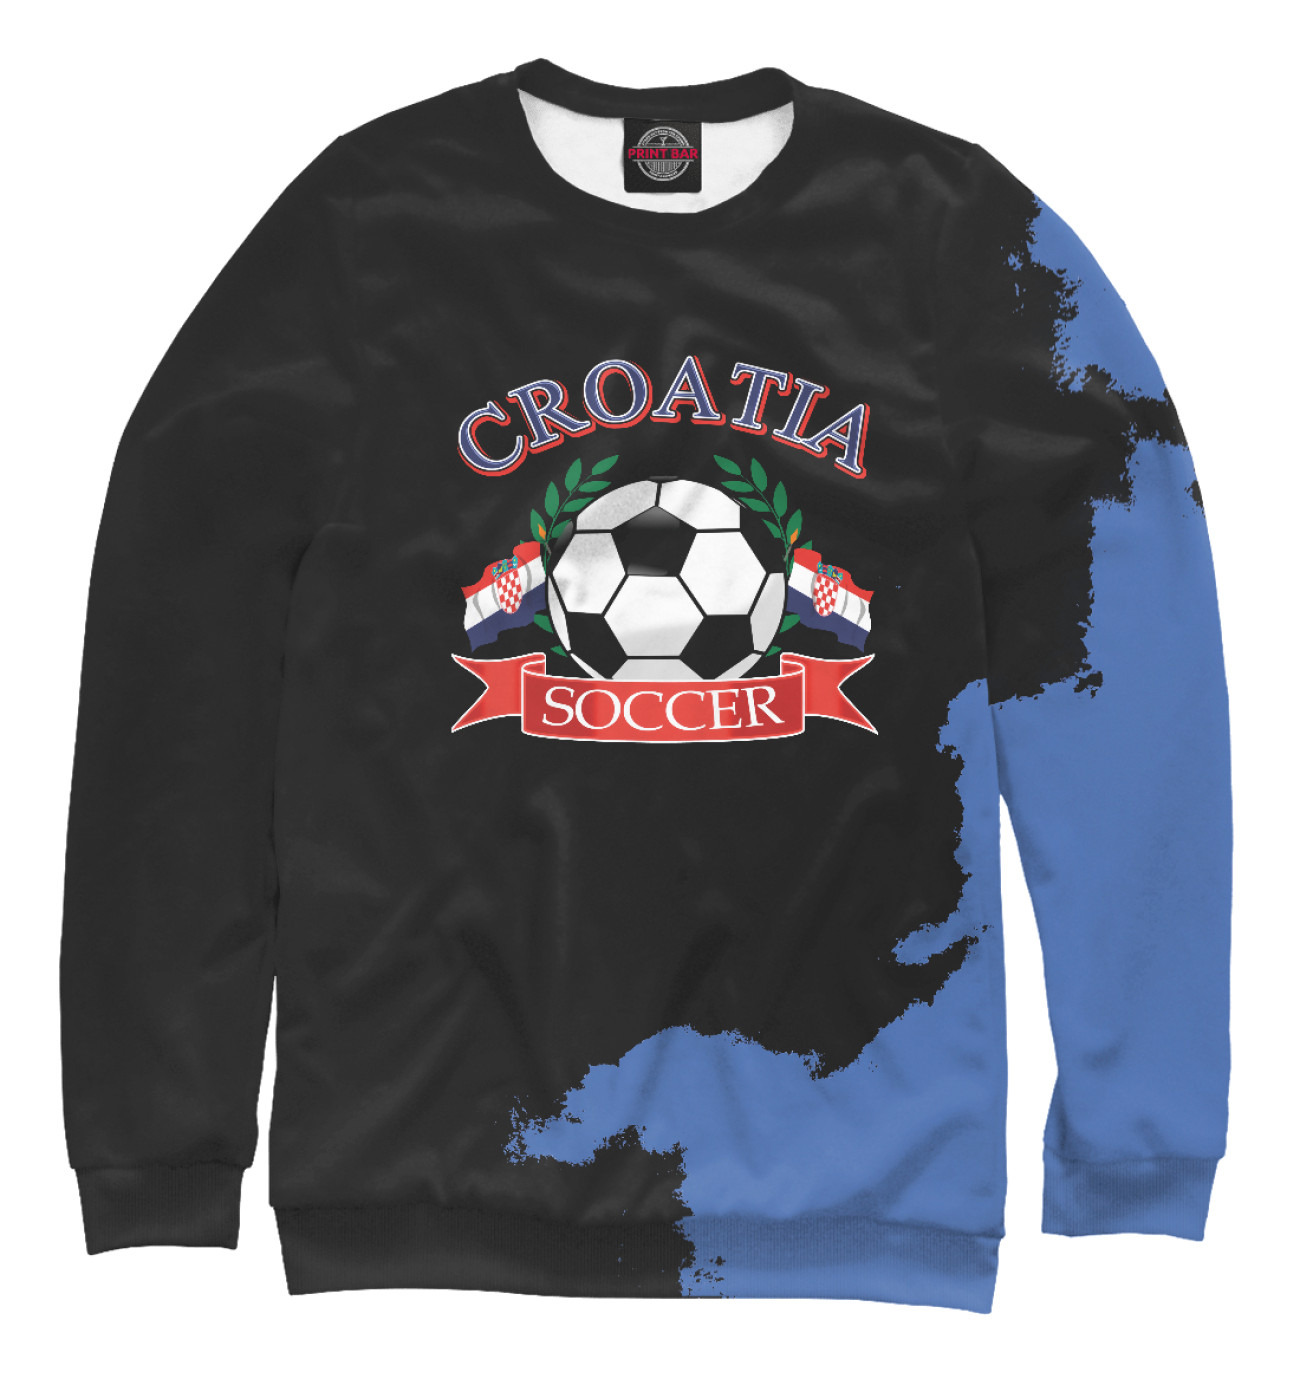 Женский Свитшот Croatia soccer ball, артикул: FTO-670002-swi-1